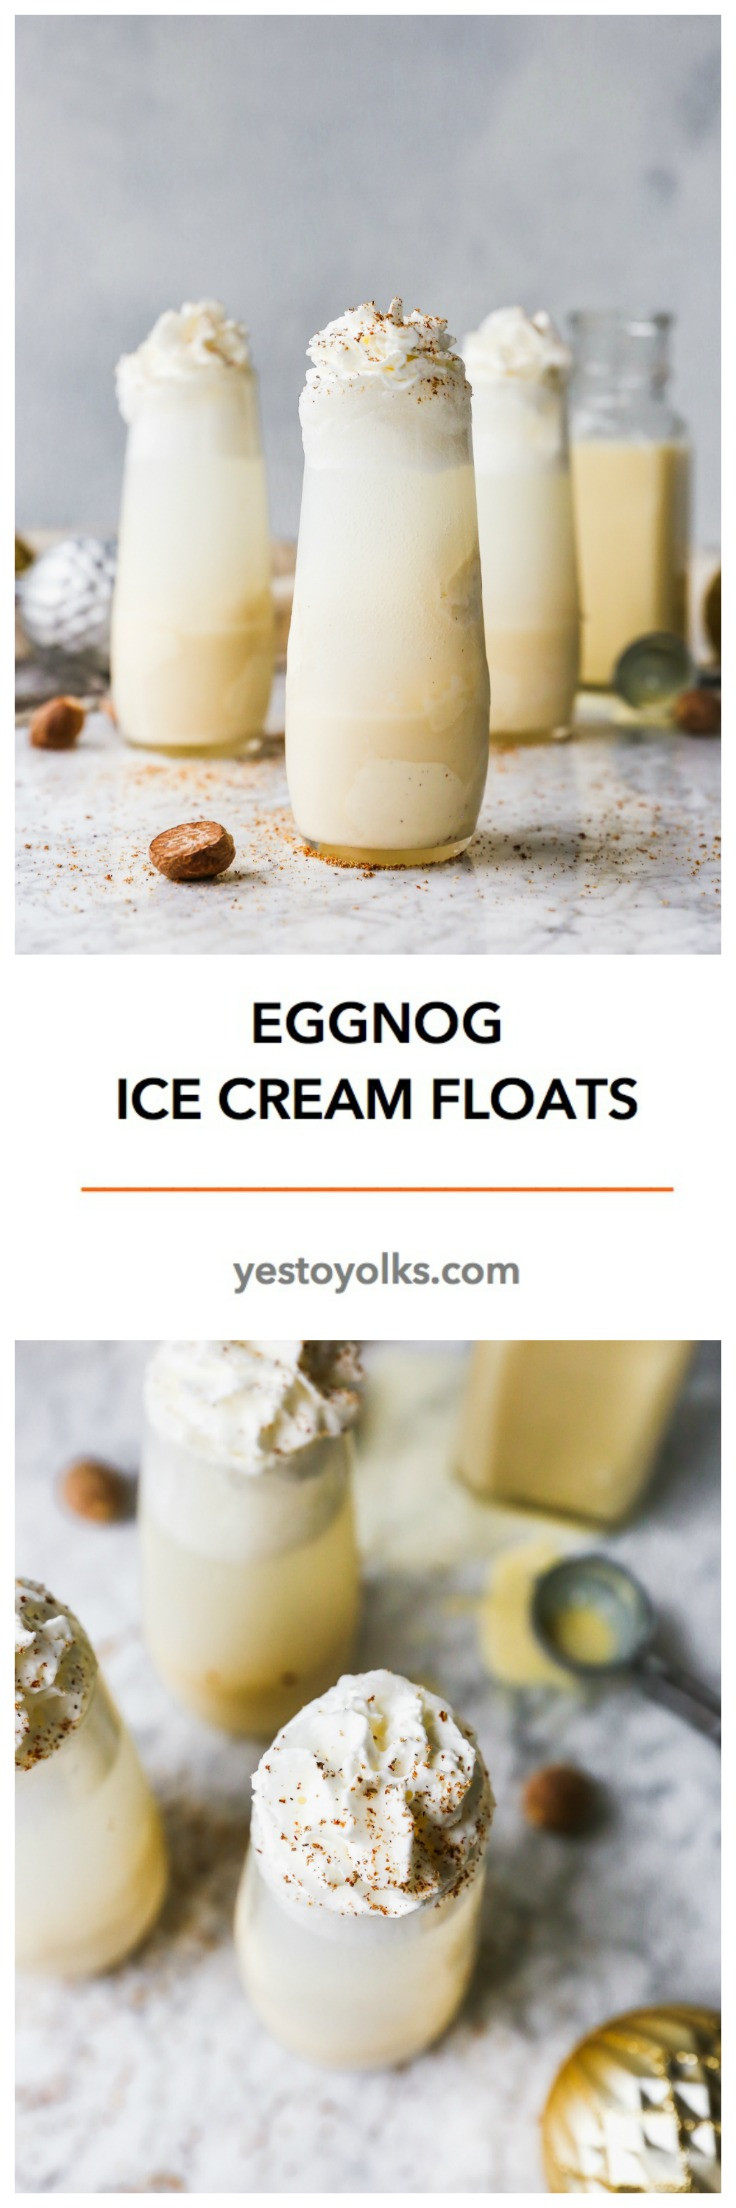 Eggnog Ice Cream Recipe
 Eggnog Ice Cream Floats